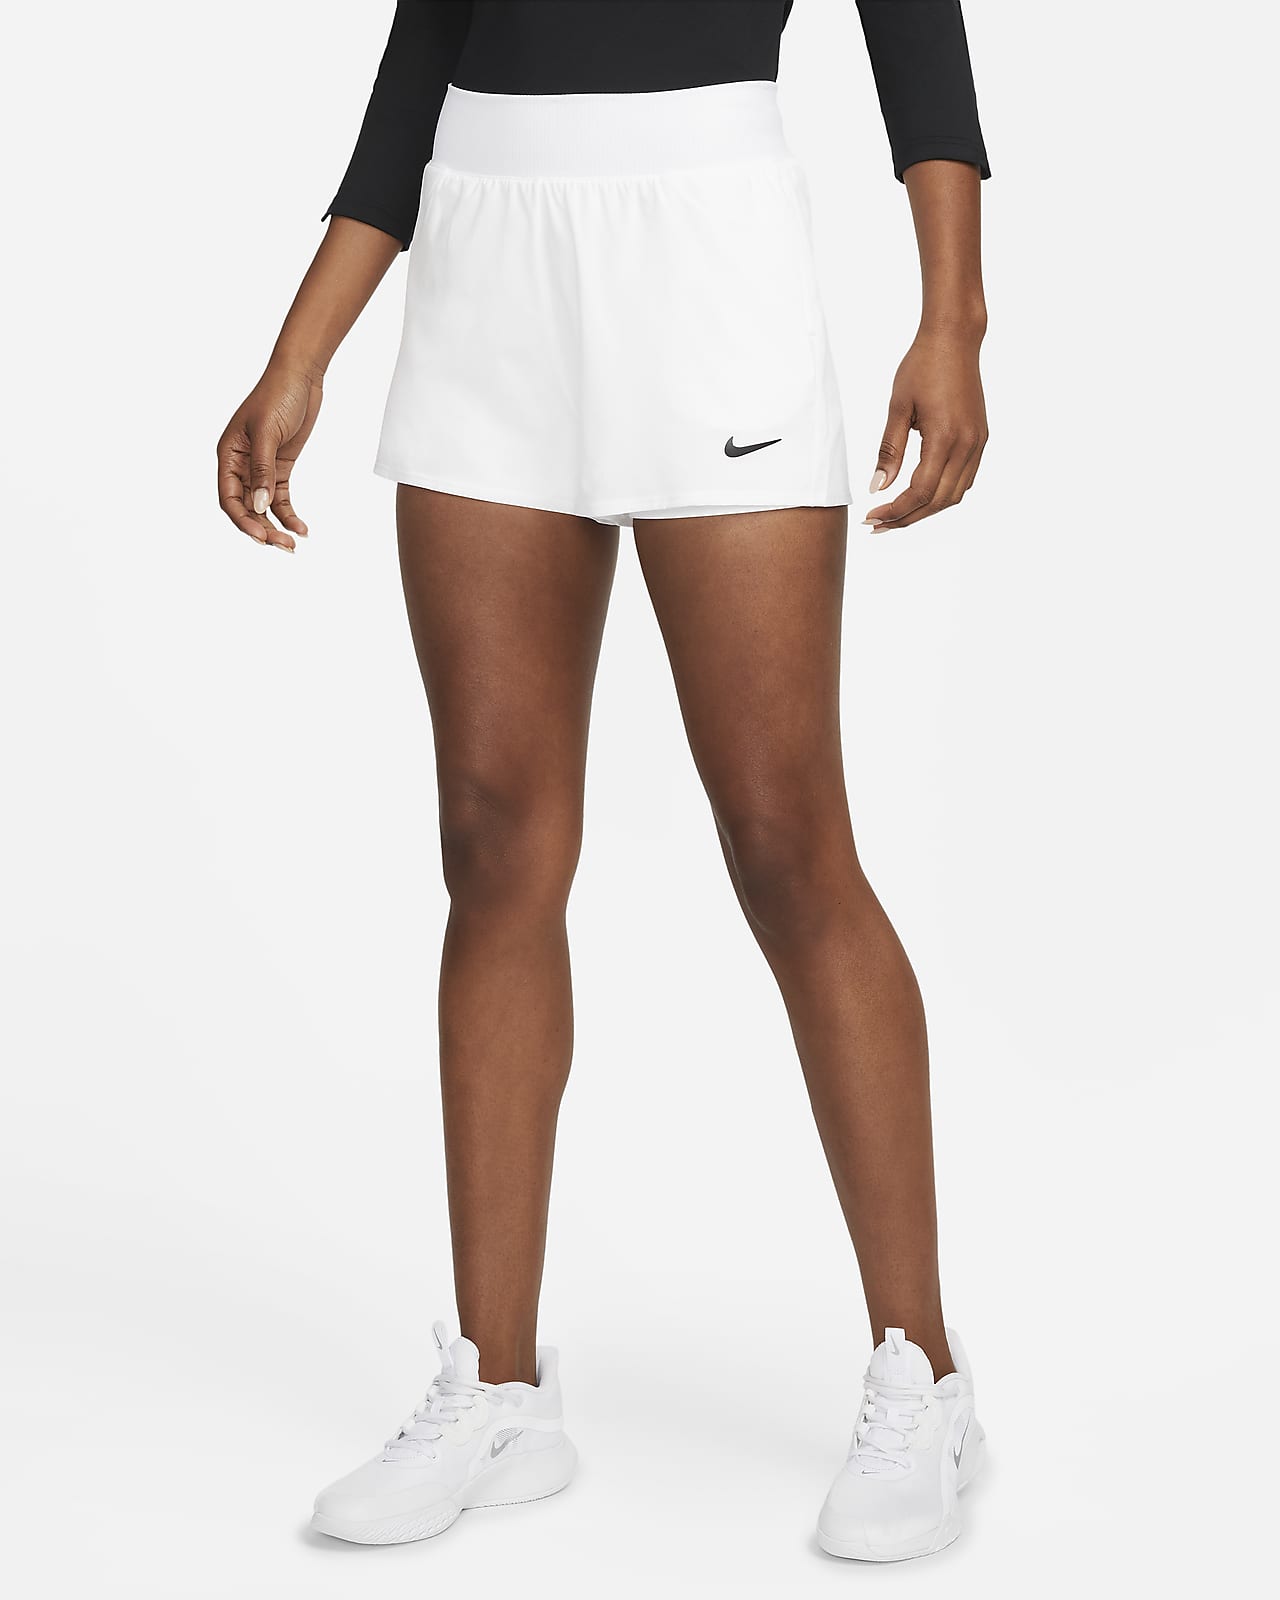 Puñado Pino Grillo NikeCourt Victory Pantalón corto de tenis - Mujer. Nike ES